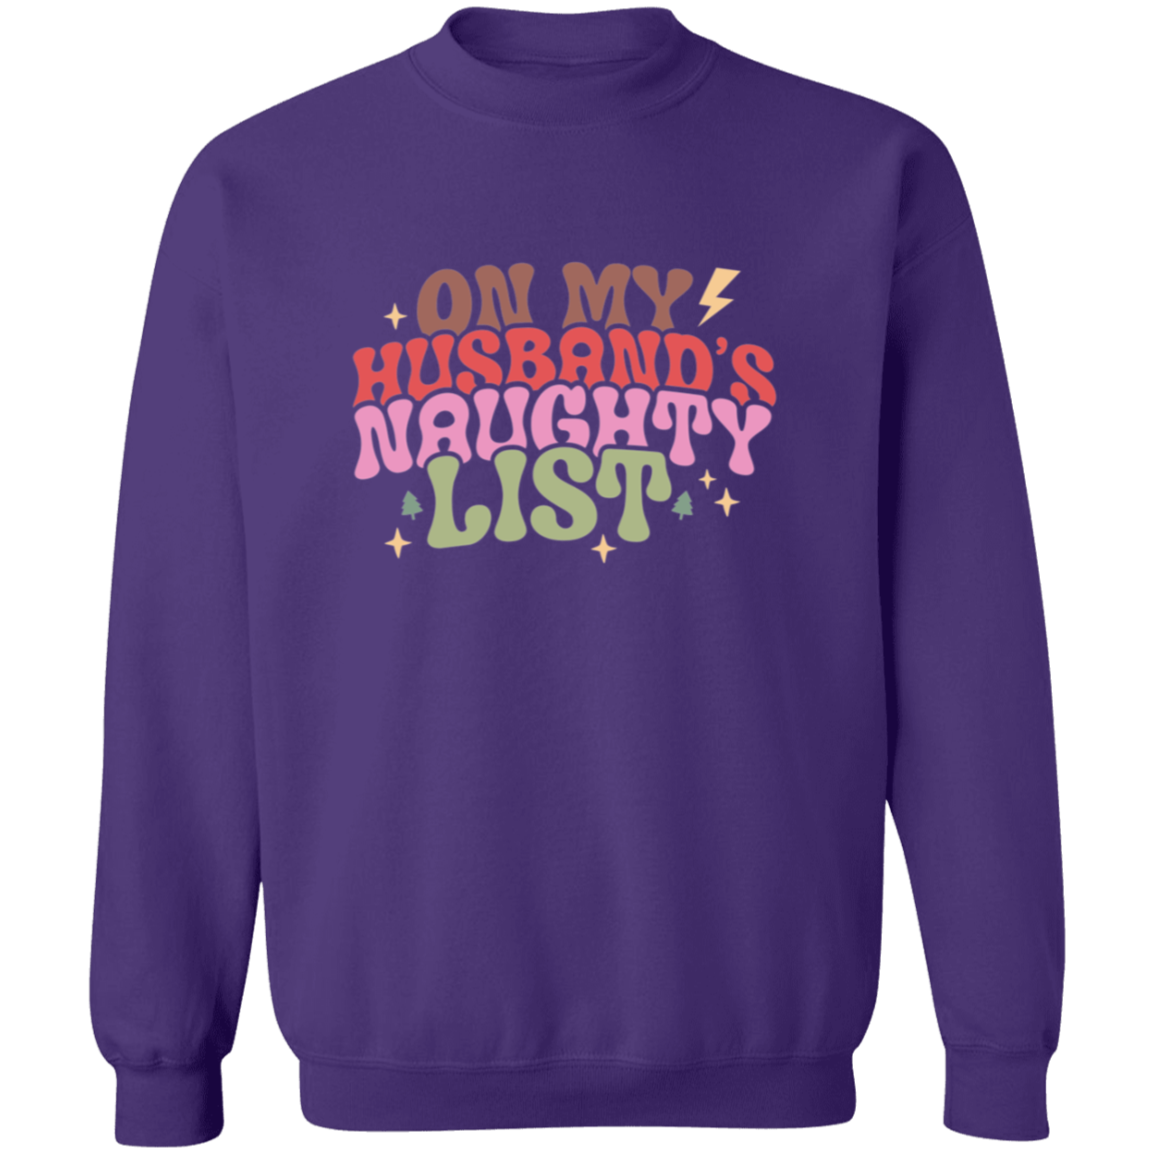 On My Husband's Naughty List - Ladies Ugly Sweatshirt, Christmas, Winter